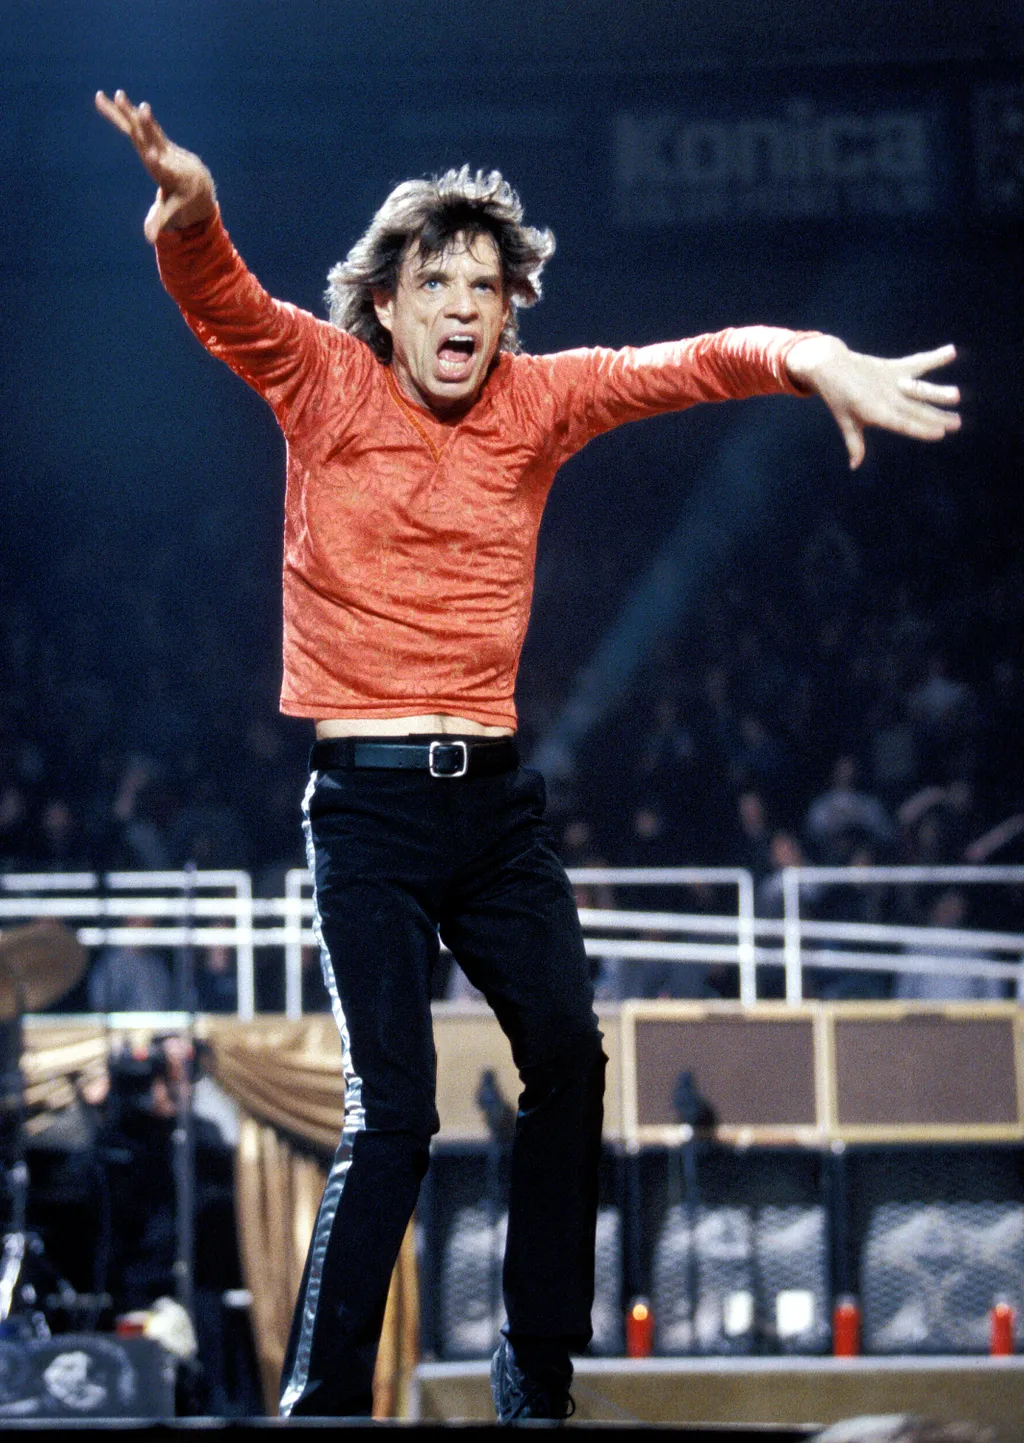 Mick Jagger, GALÉRIA, 1997 